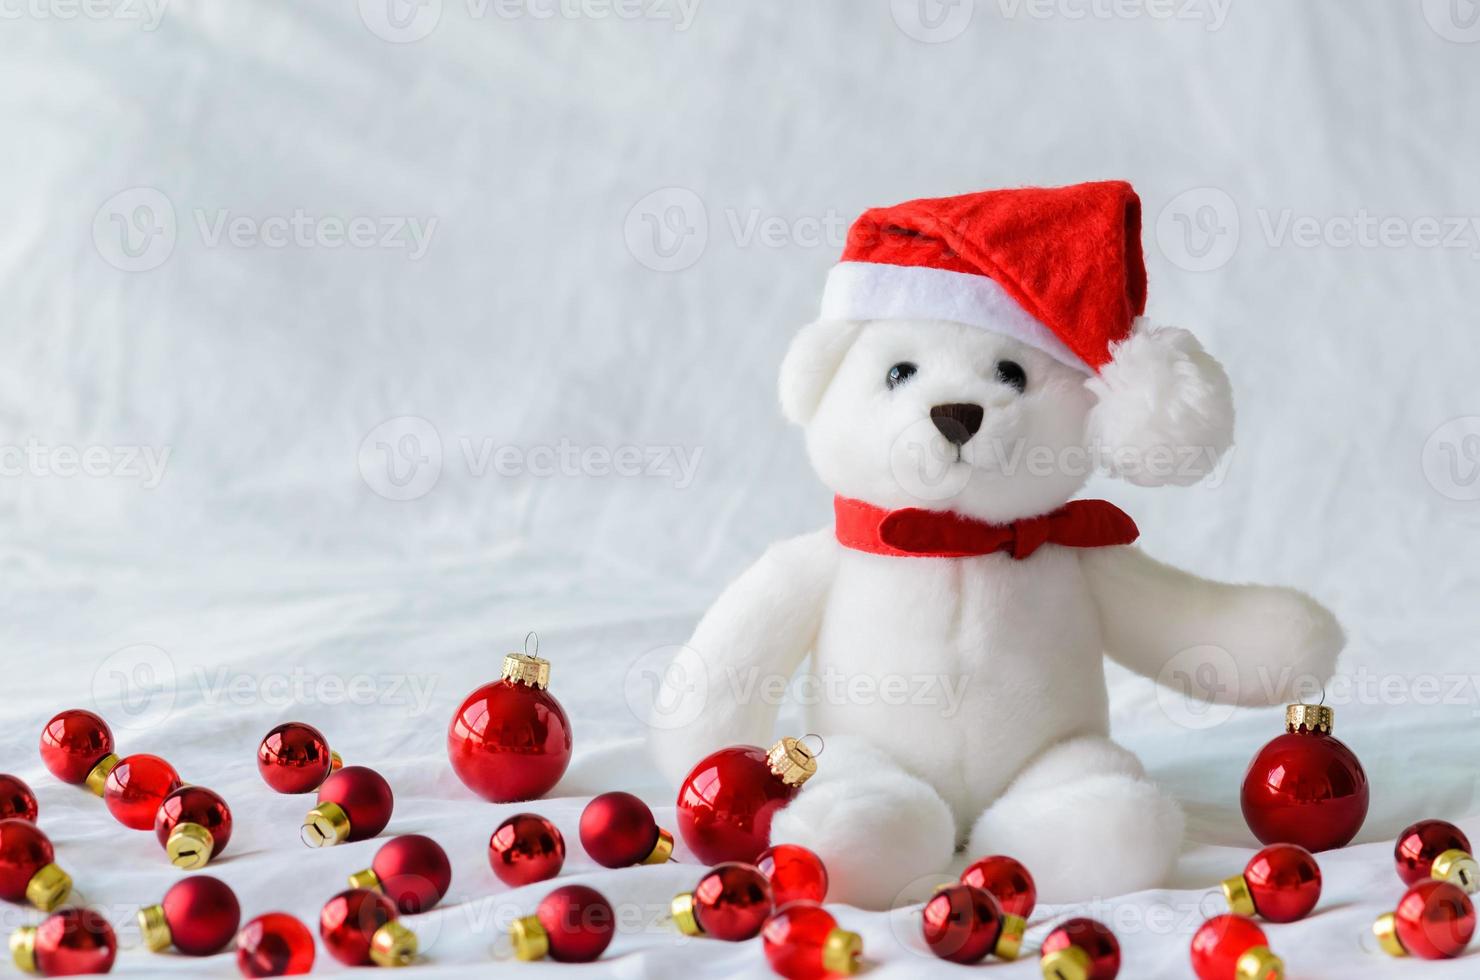 mise au point sélective sur les yeux d'ours en peluche du père noël qui porte un chapeau assis avec des boules de noël rouges sur fond de tissu blanc. photo